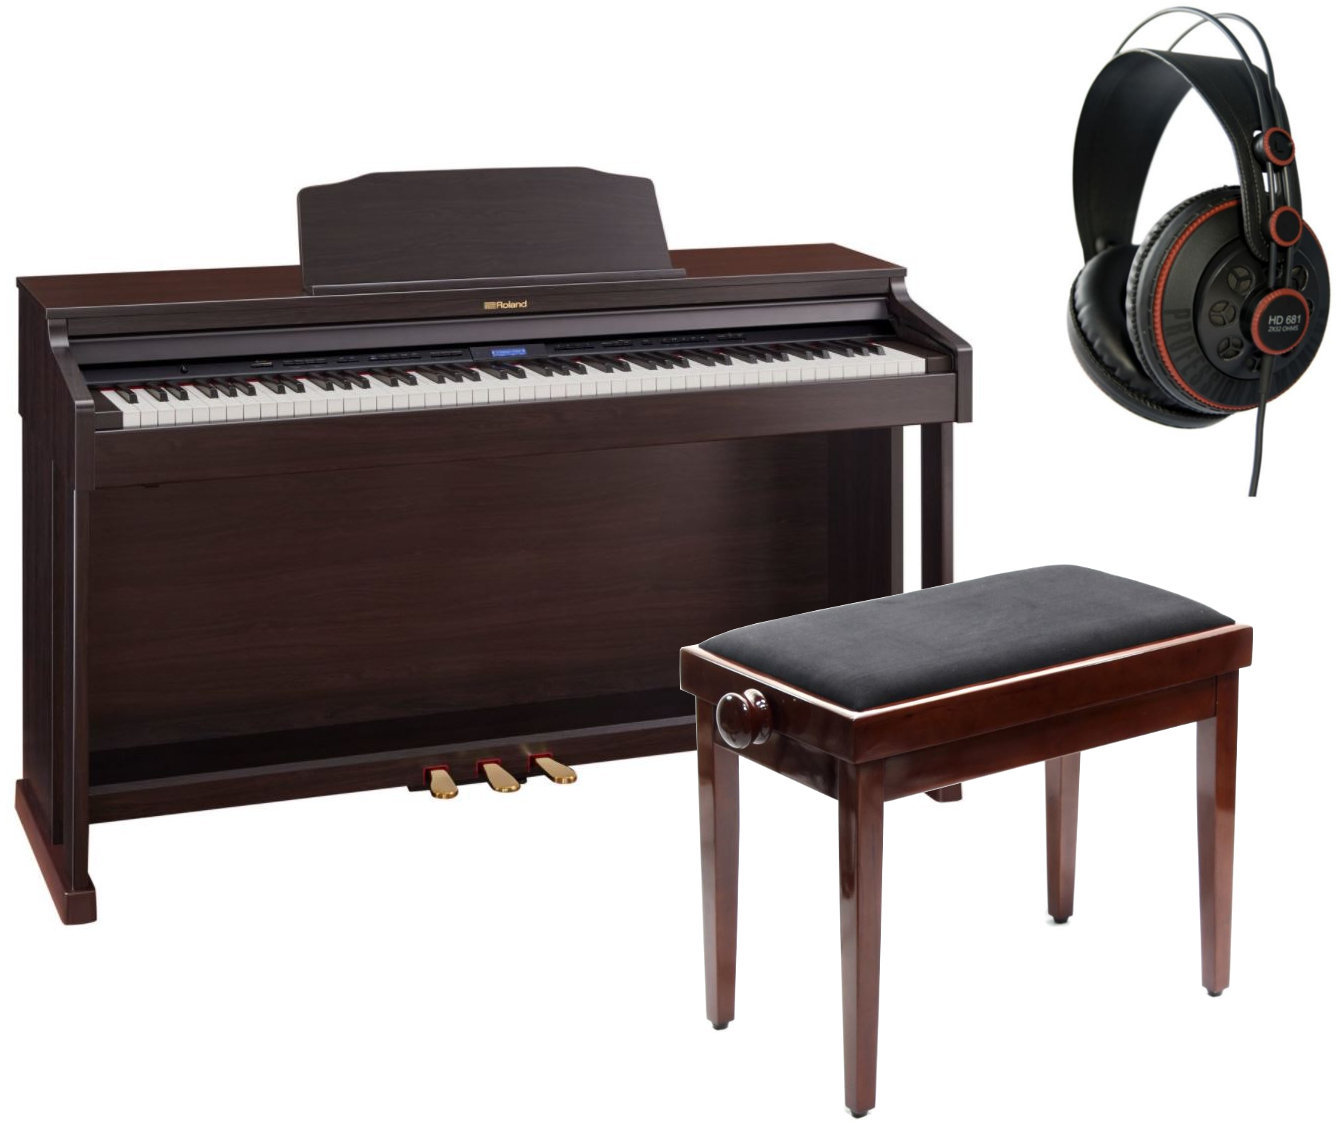 Ψηφιακό Πιάνο Roland HP-601 CR SET Contemporary Rosewood Ψηφιακό Πιάνο